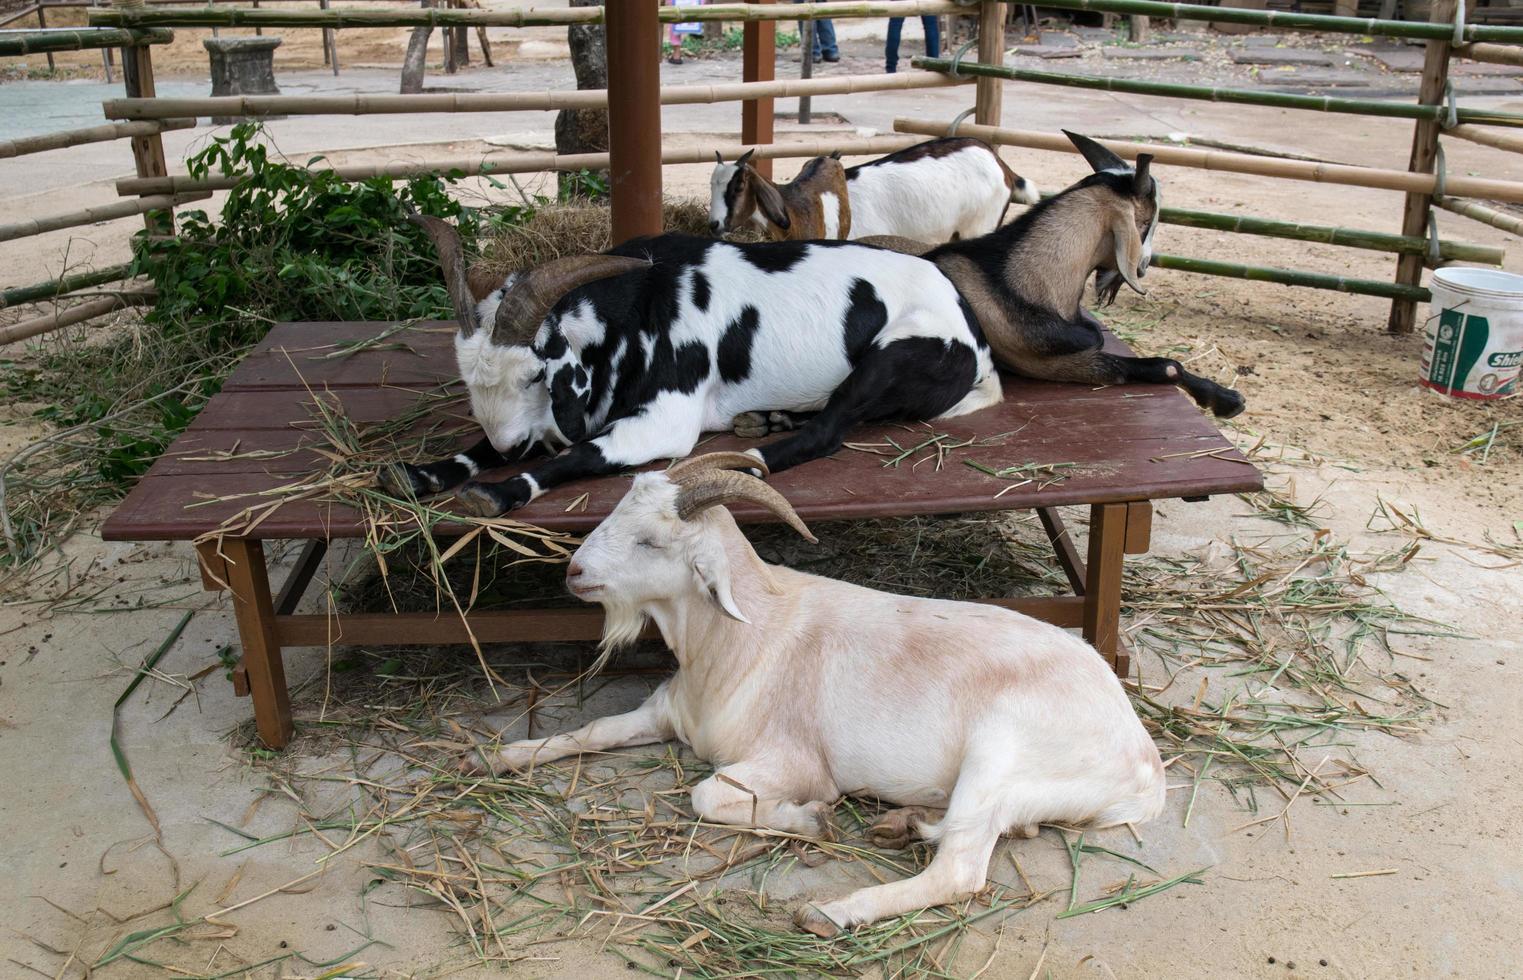 cabras en una granja foto